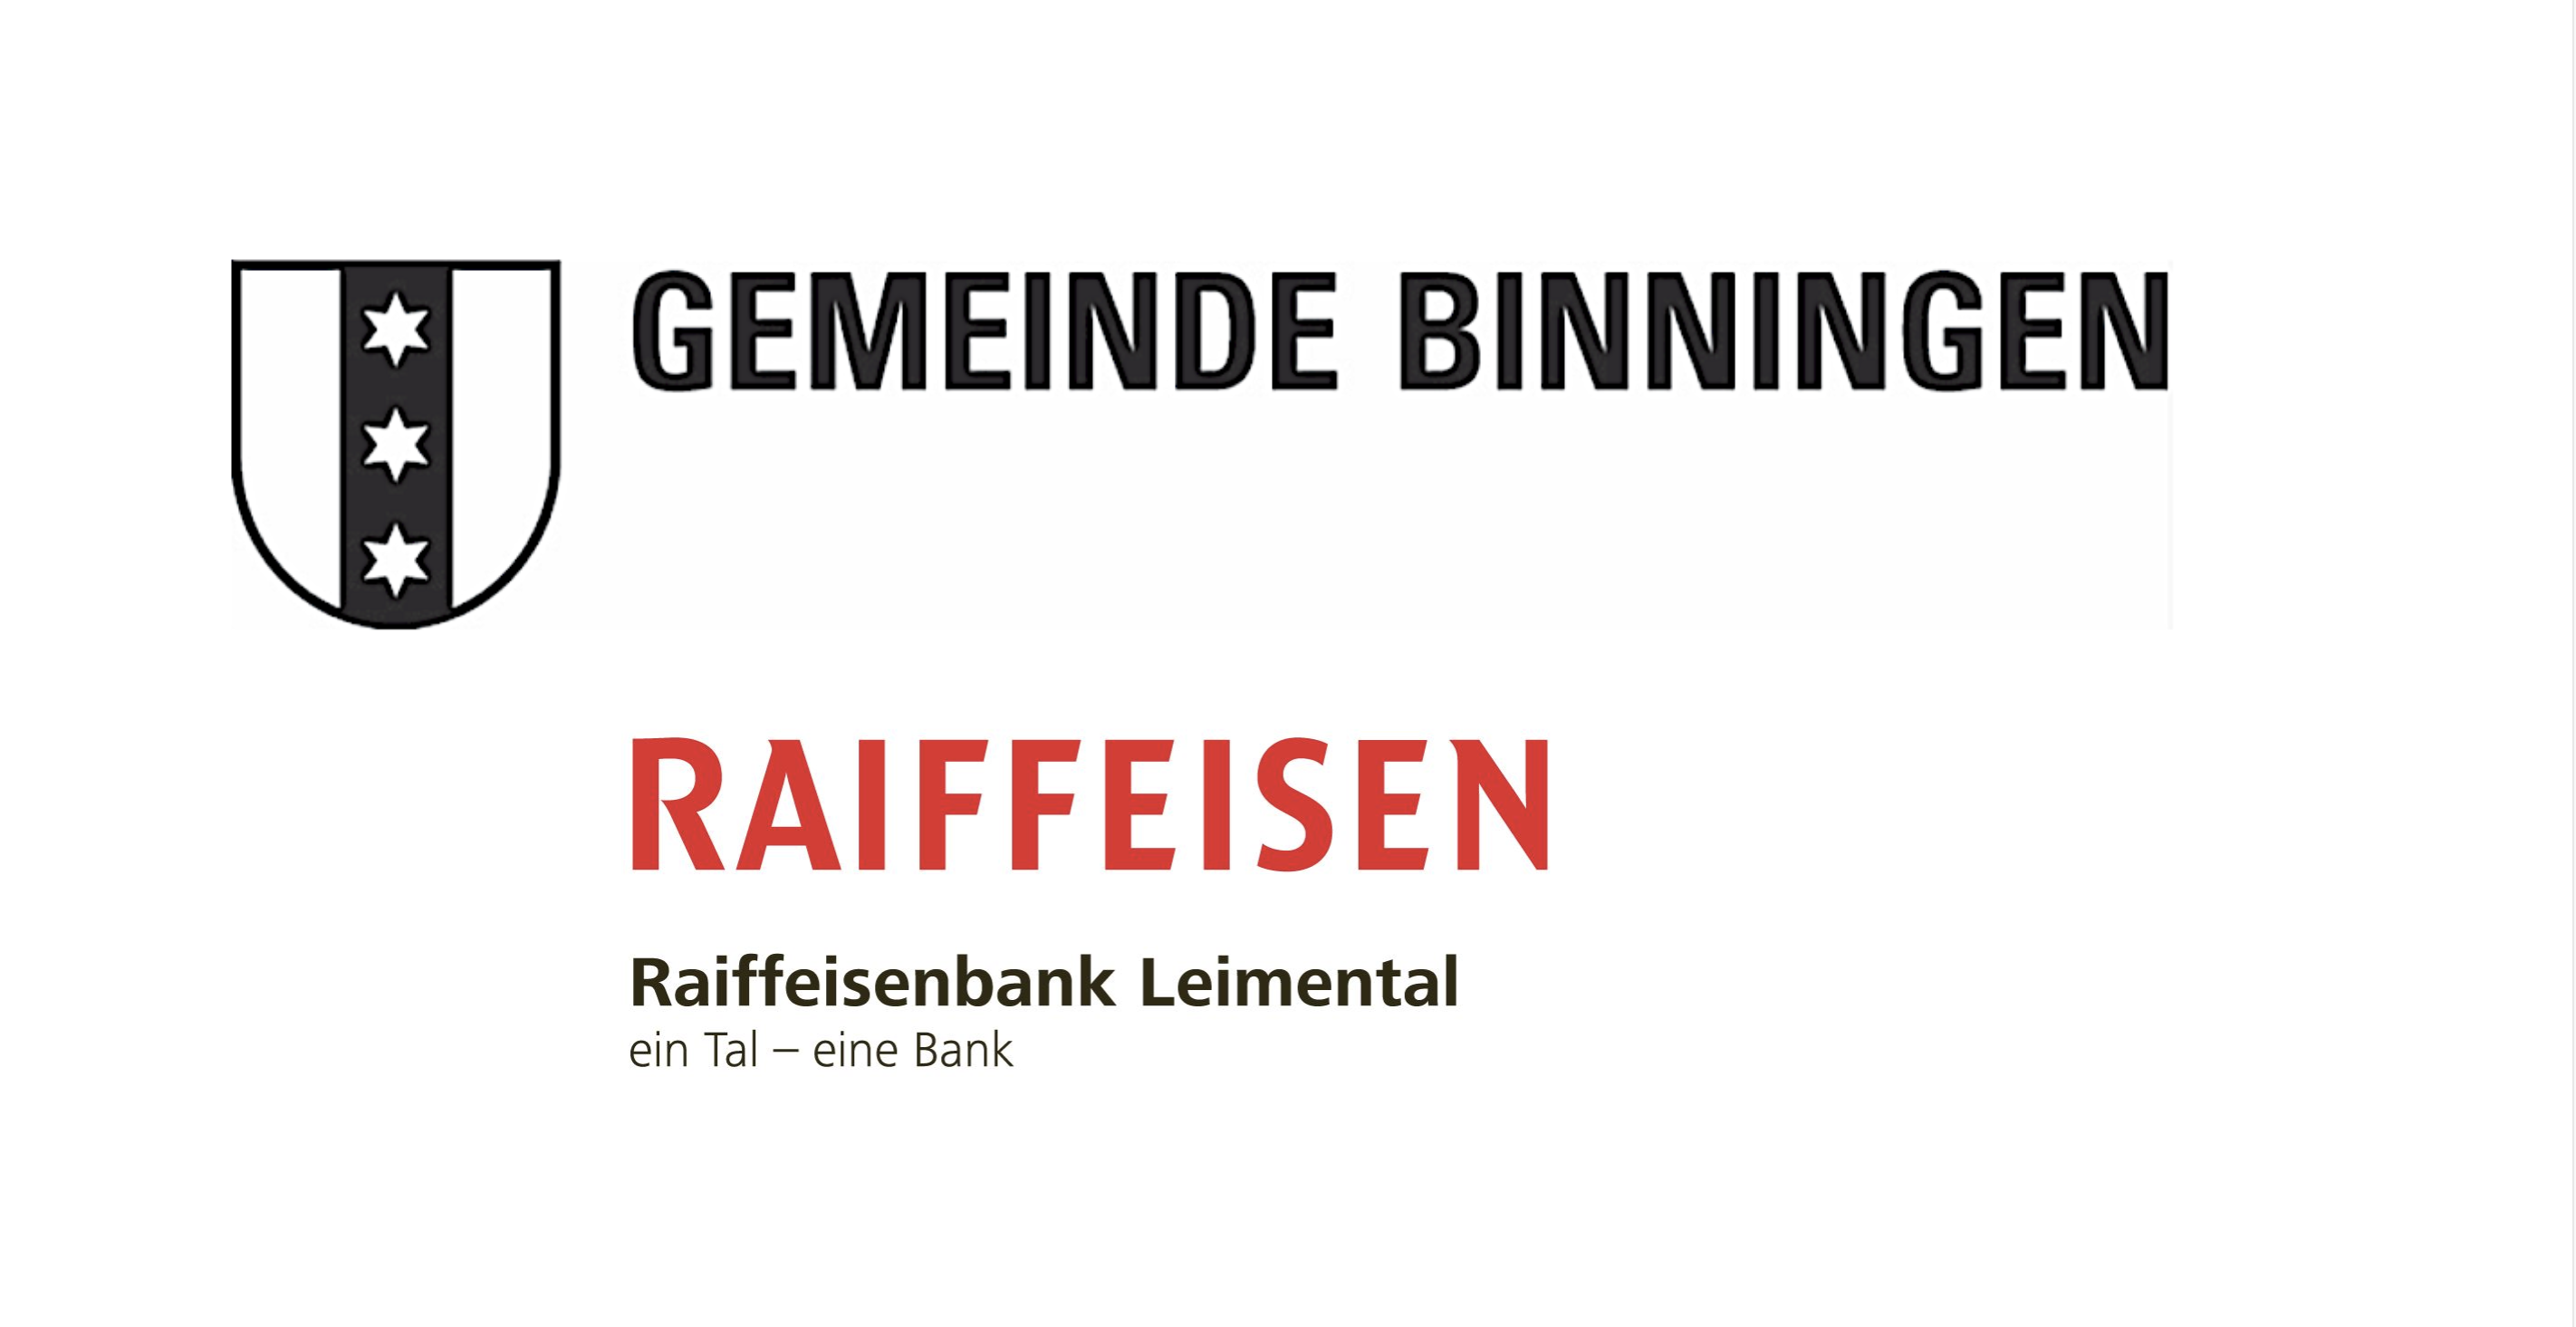 Wirtschaftsforum Binningen 2022: Soziale Kohäsion - eine zunehmende Herausforderung bei Planungsprozessen!